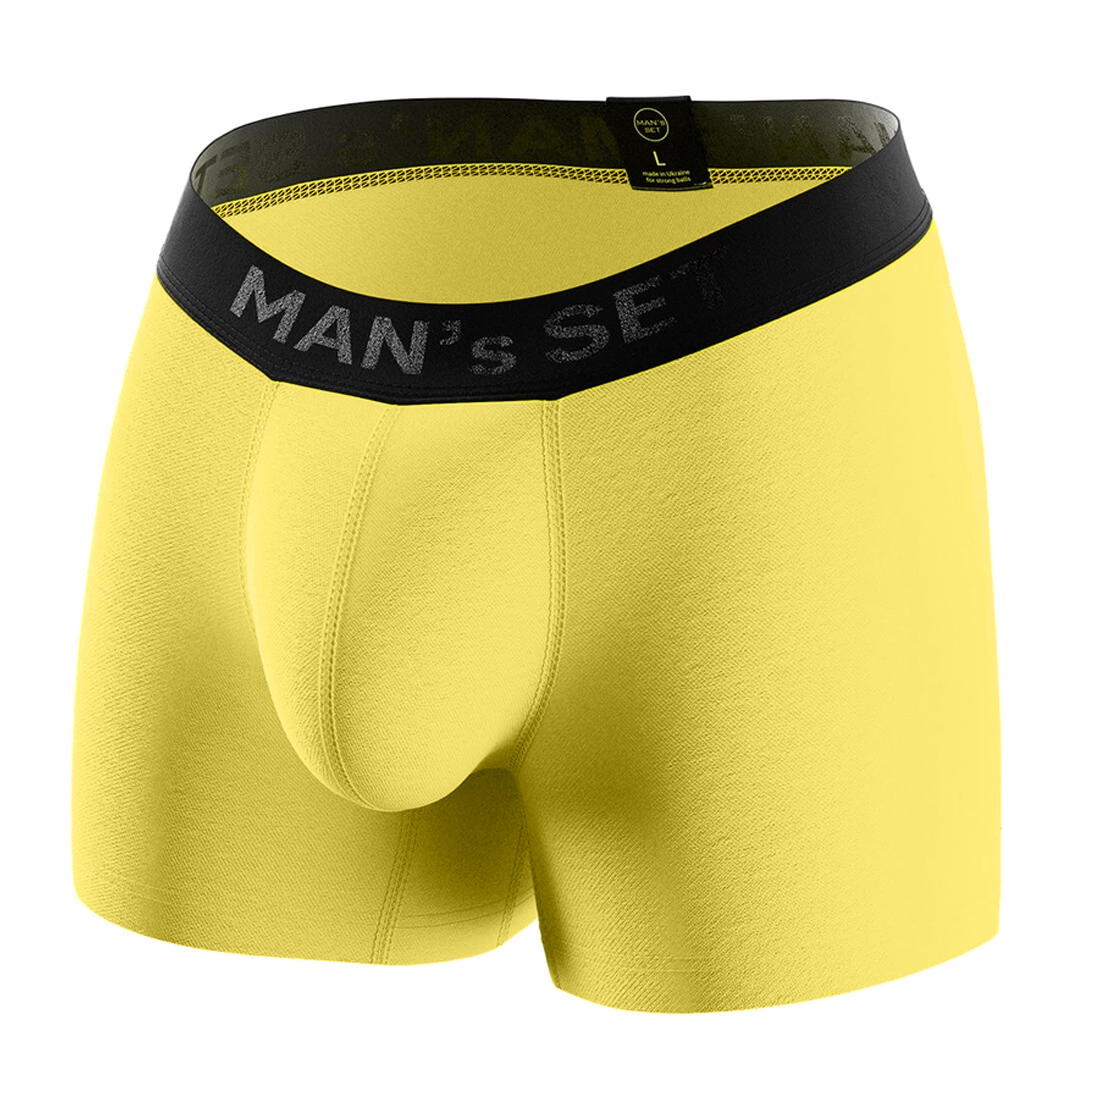 Мужские анатомические боксеры, Intimate Black Series, жёлтый MansSet